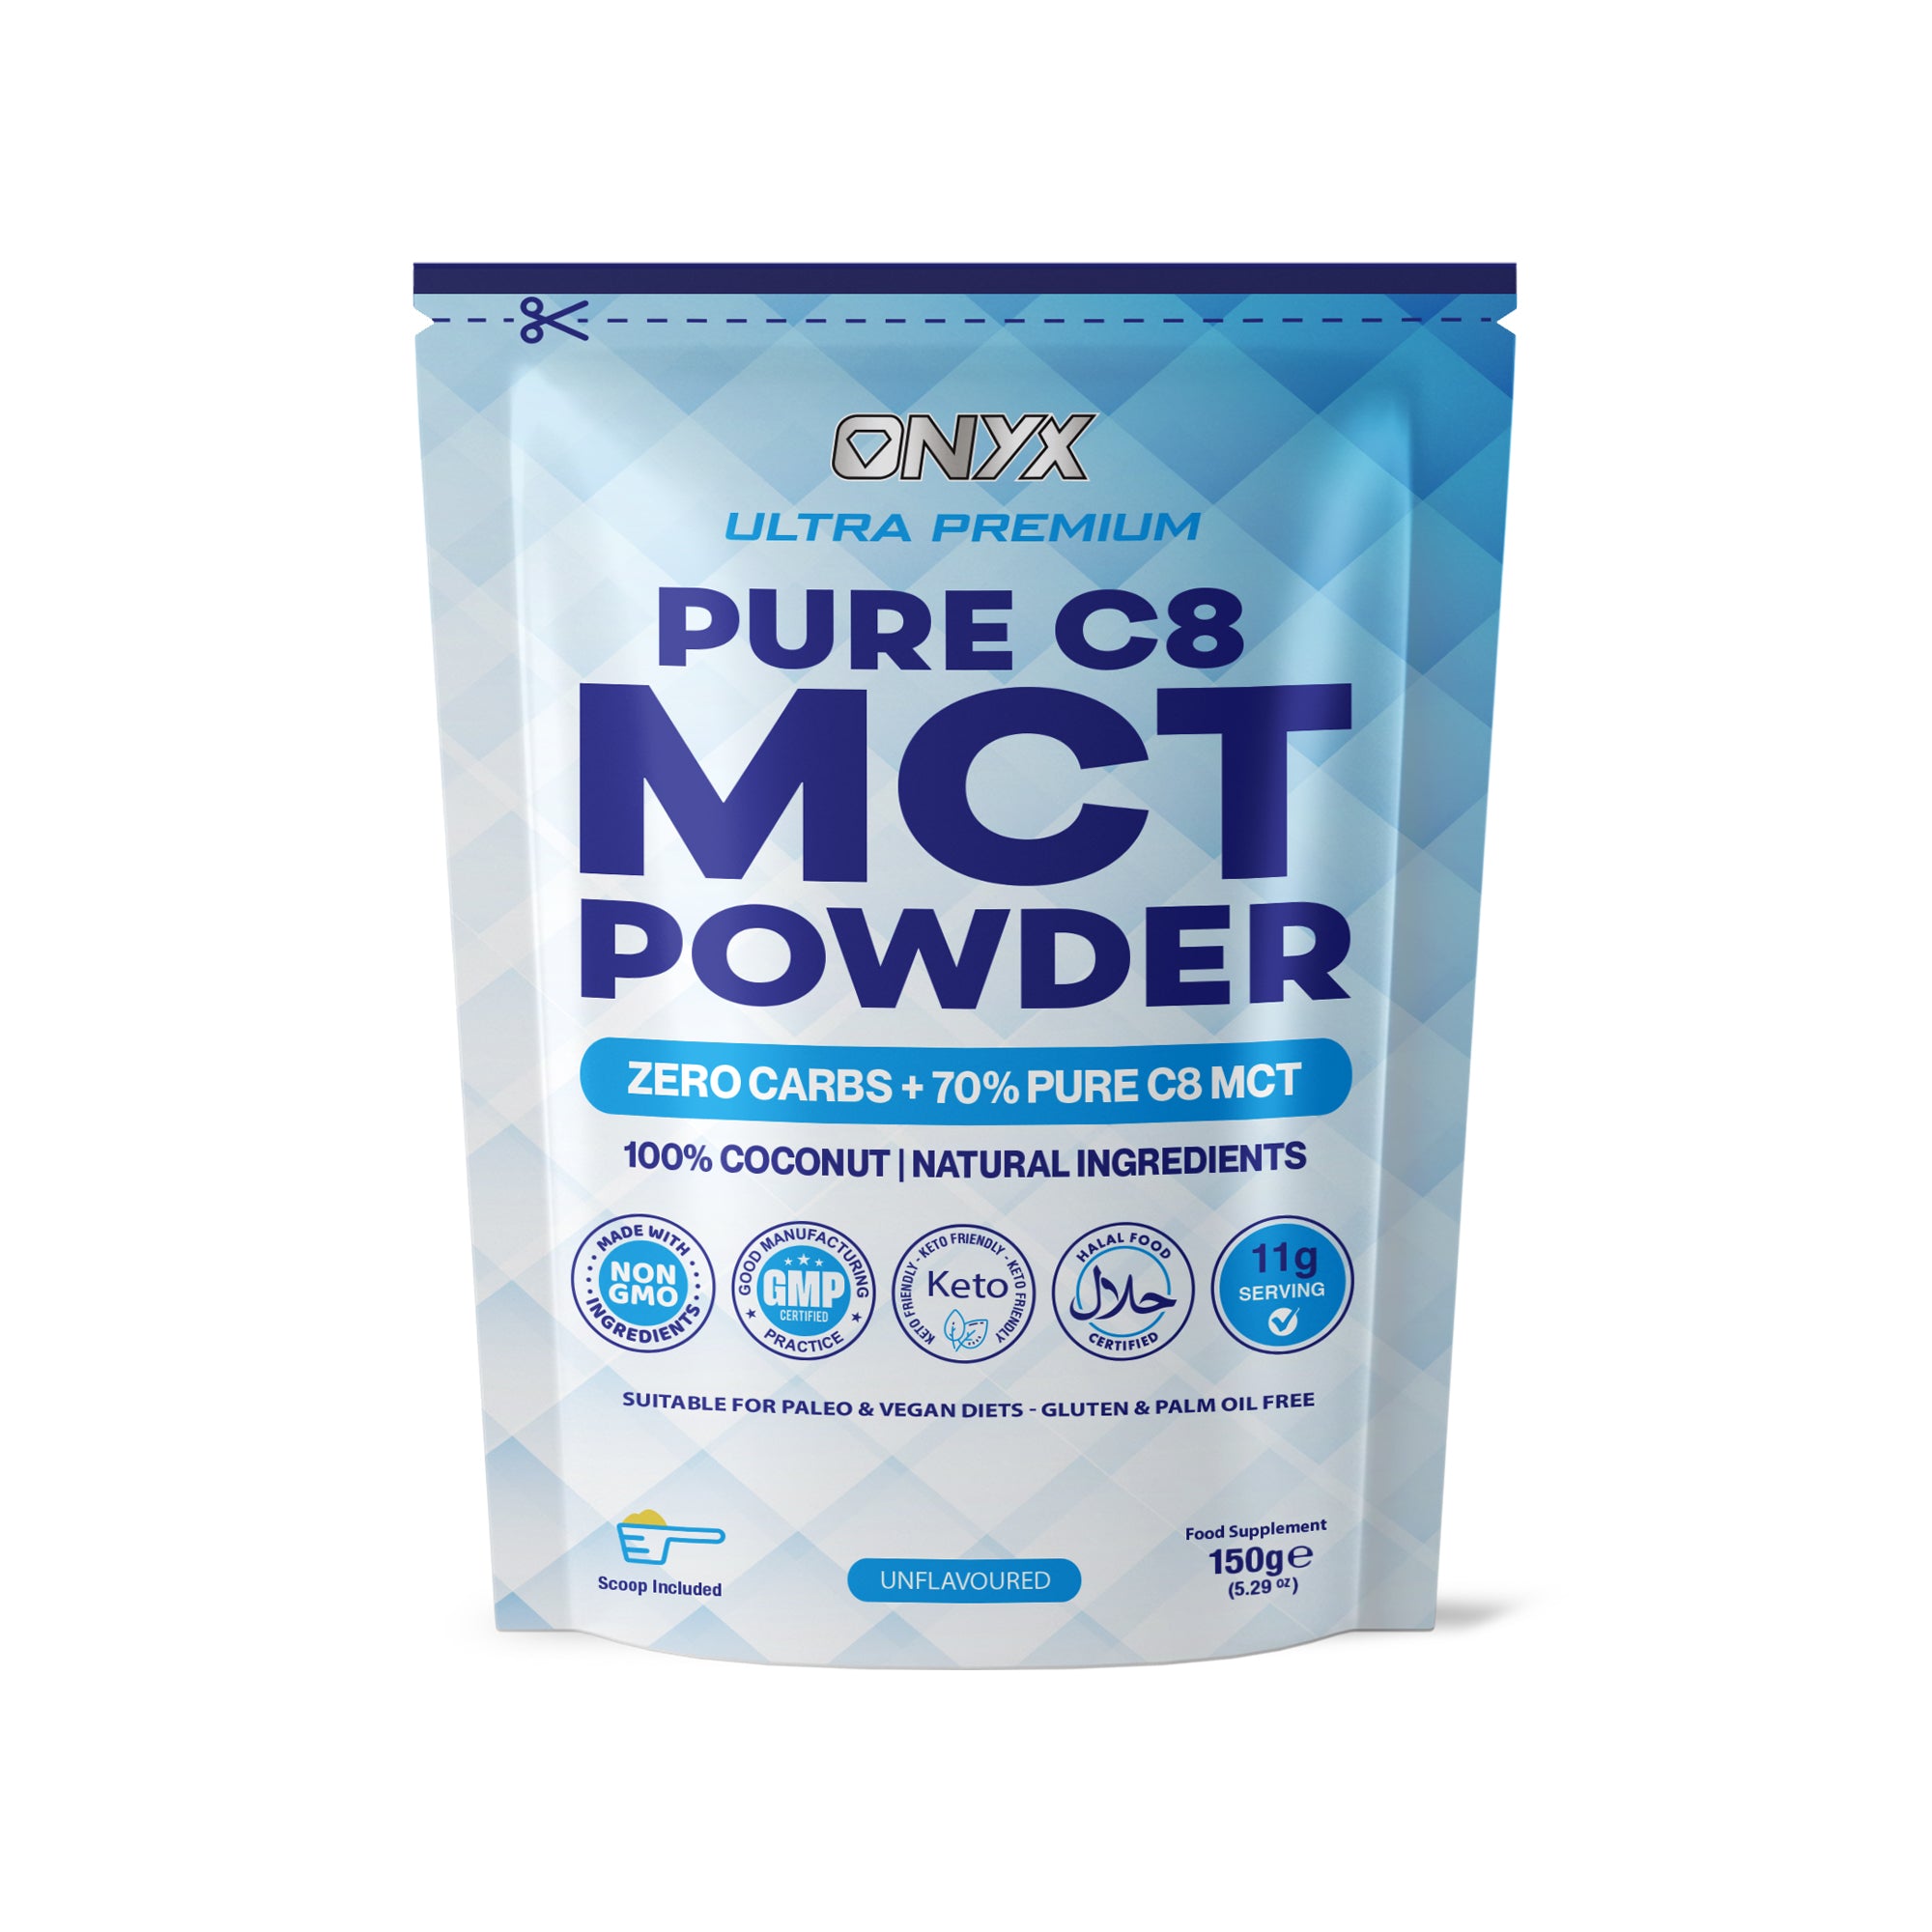 MCT Powder Pure C8 150g - ZERO CARBS + 70% PURE C8 MCT 100% Coconut